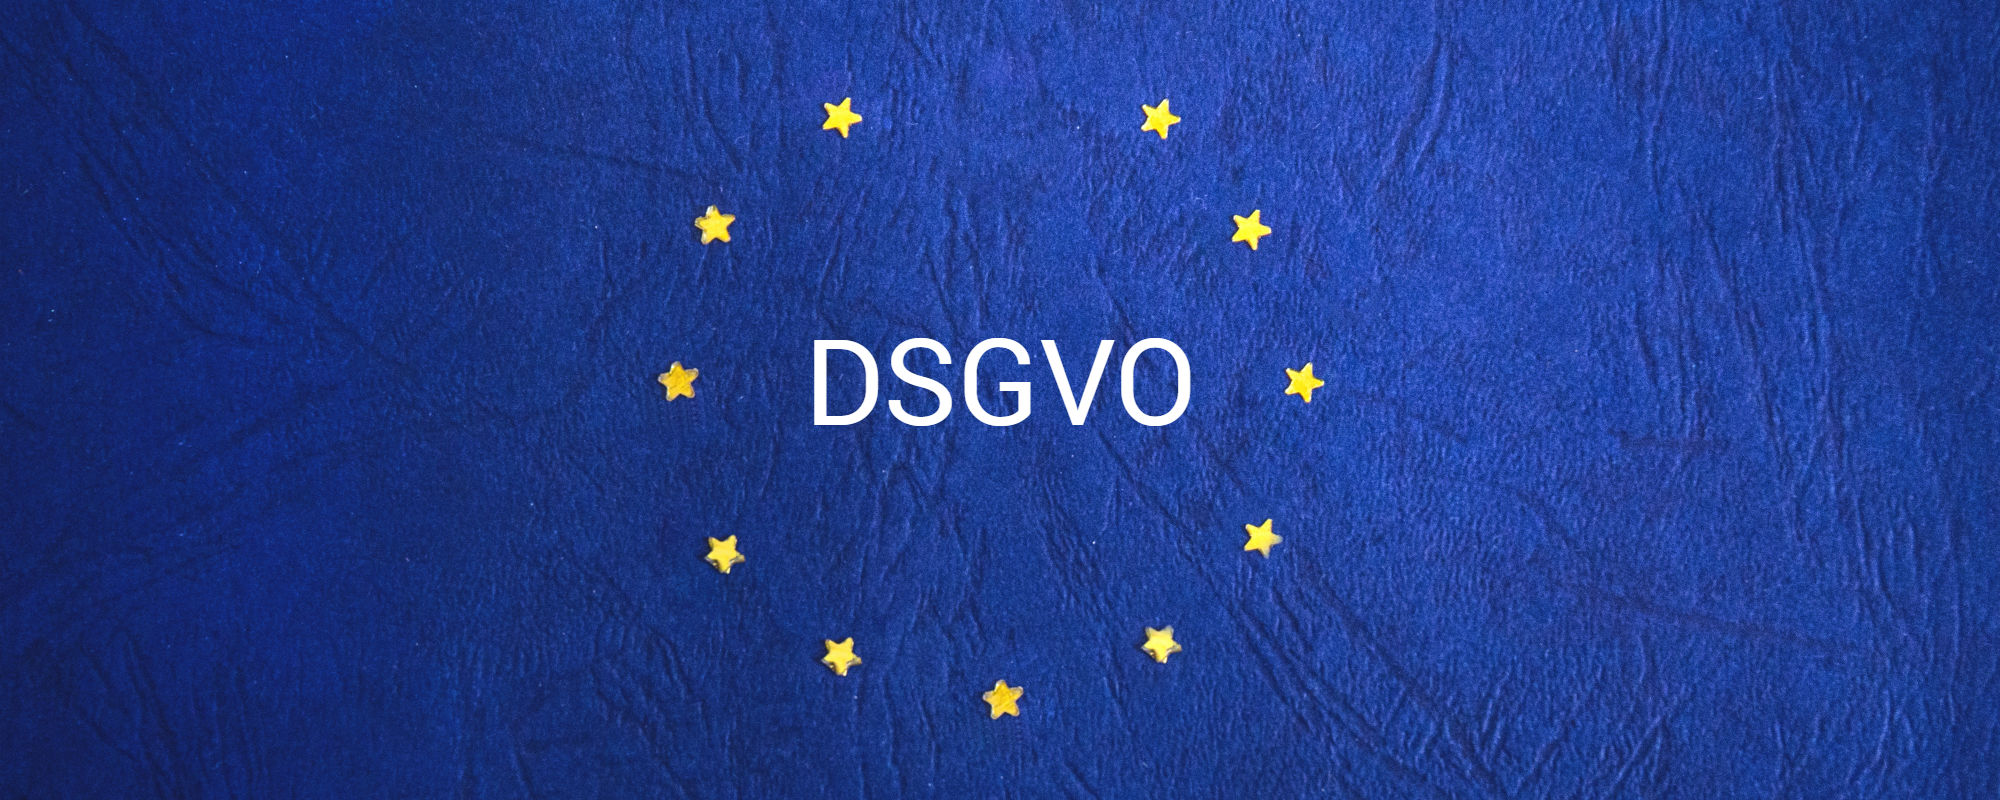 DSGVO Schriftzug auf blauem Hintergrund